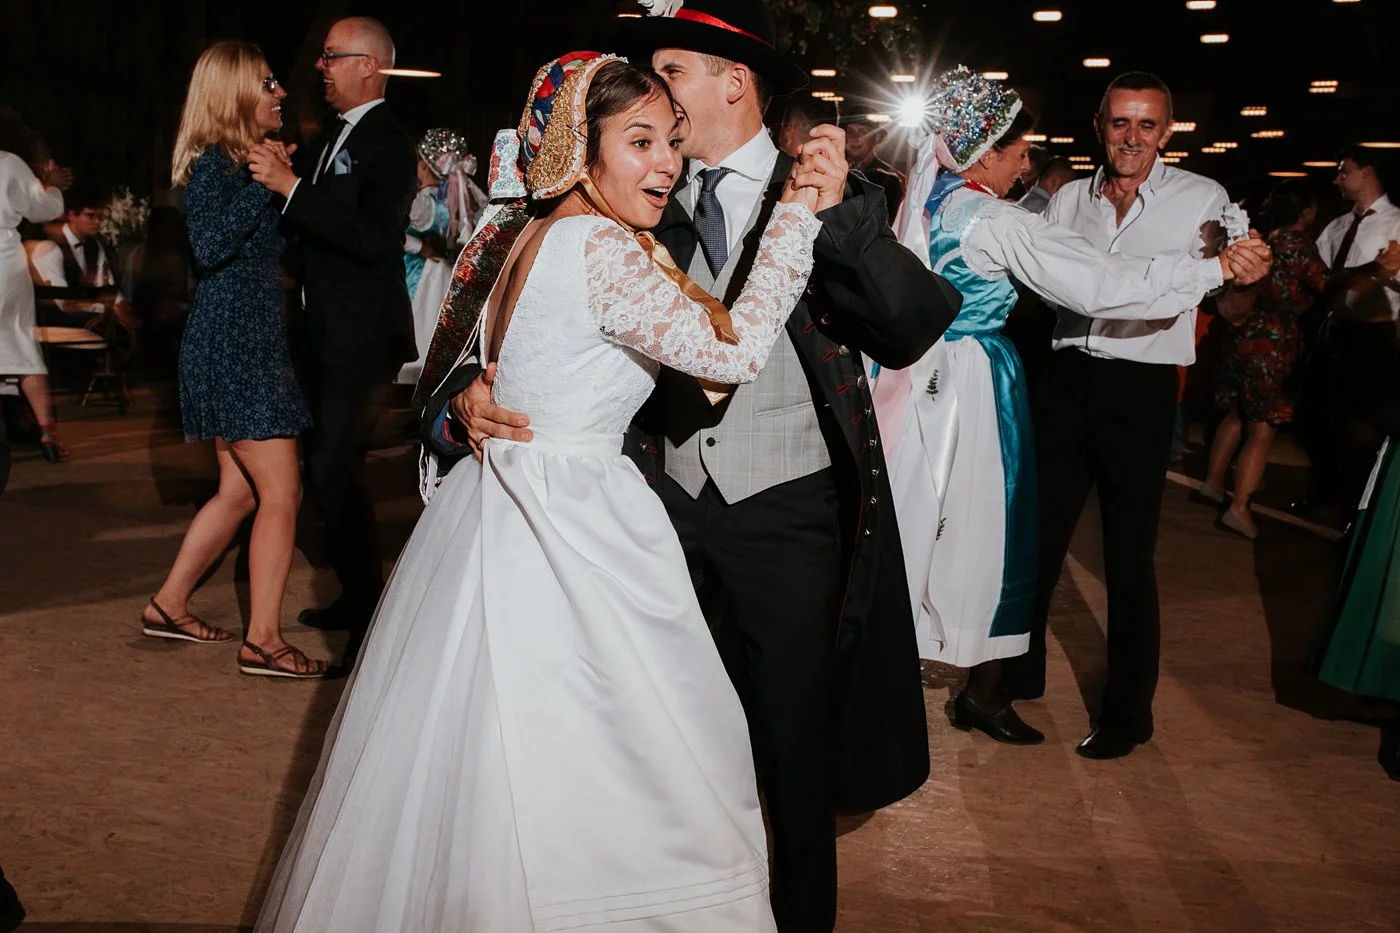 Dominika & Aleksander - Rustykalne wesele w stodole - Baborówko 144